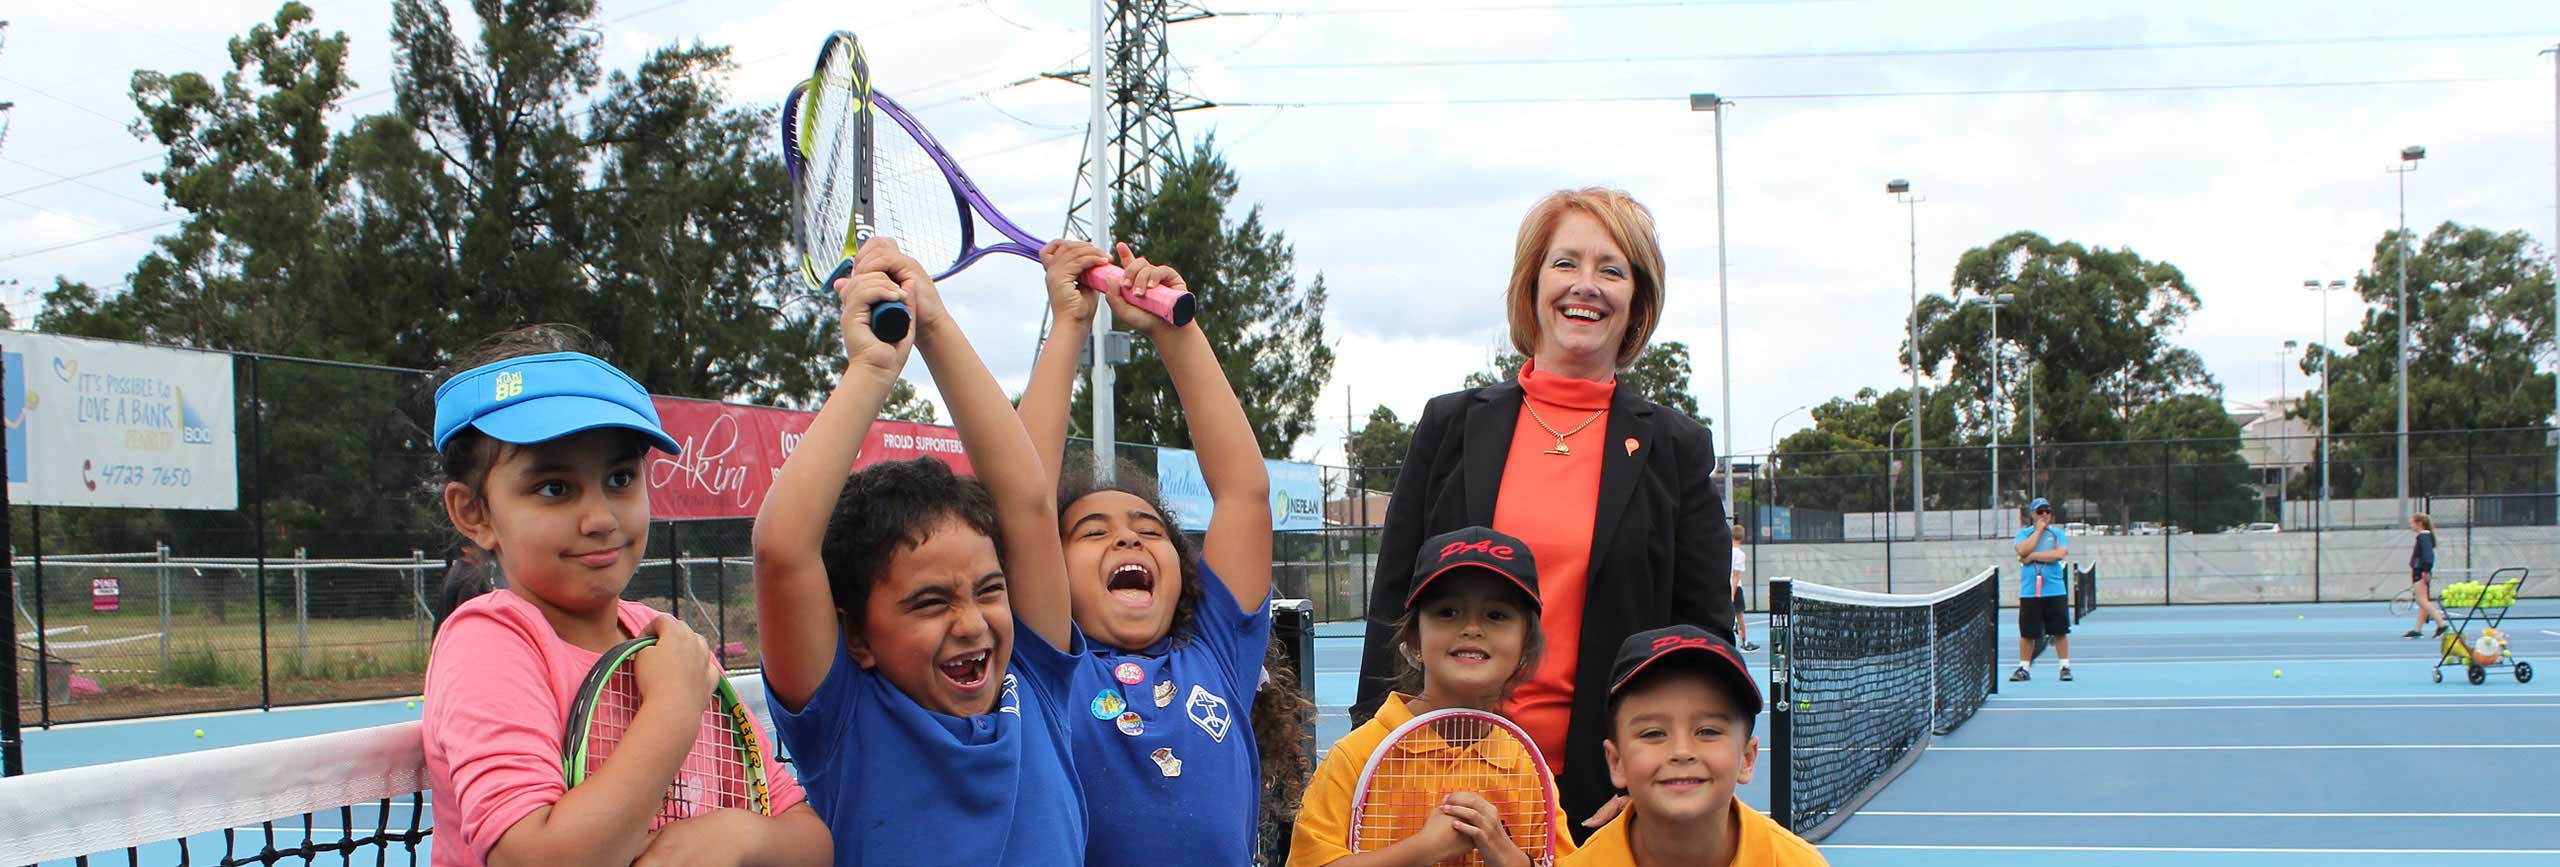 Penrith Mayor Cr Karen McKeown with children on Woodriff Gardens Tennis courts.